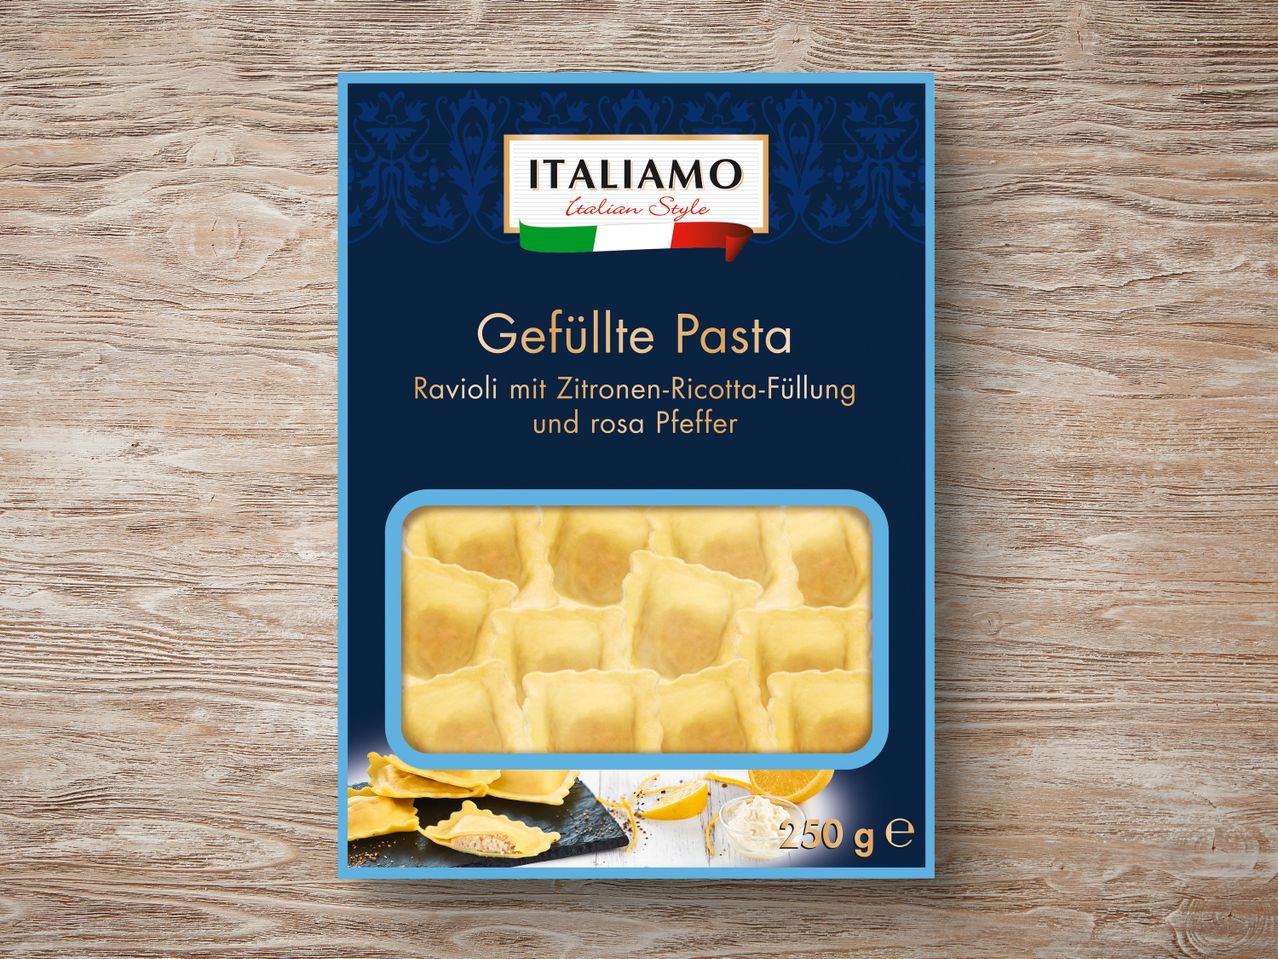 Italiamo Premium Gefüllte Pasta